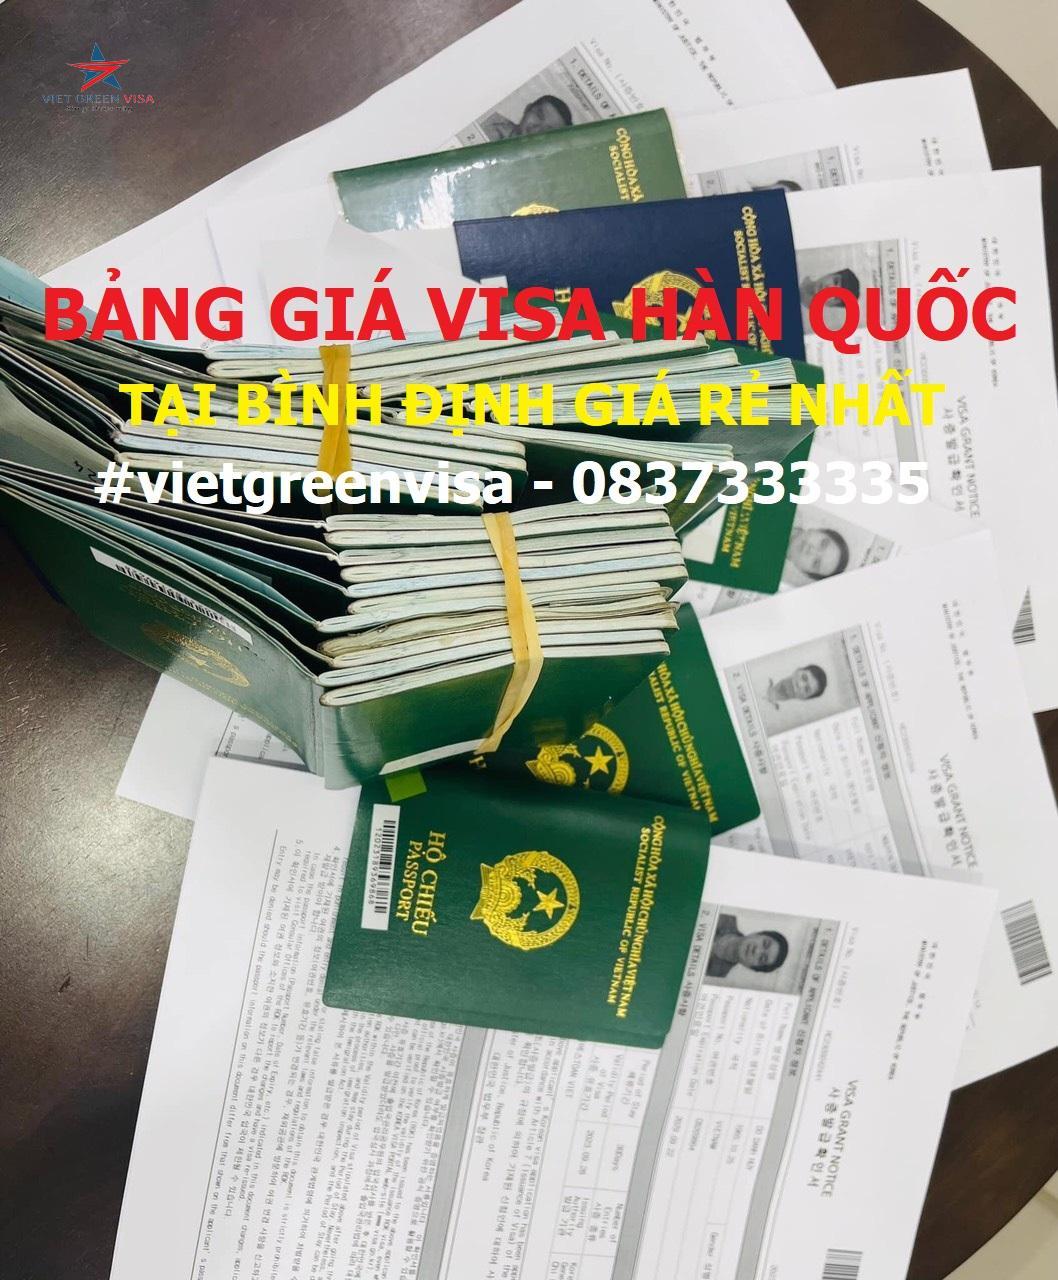 Dịch vụ xin-visa Hàn Quốc tại Bình Định trọn gói